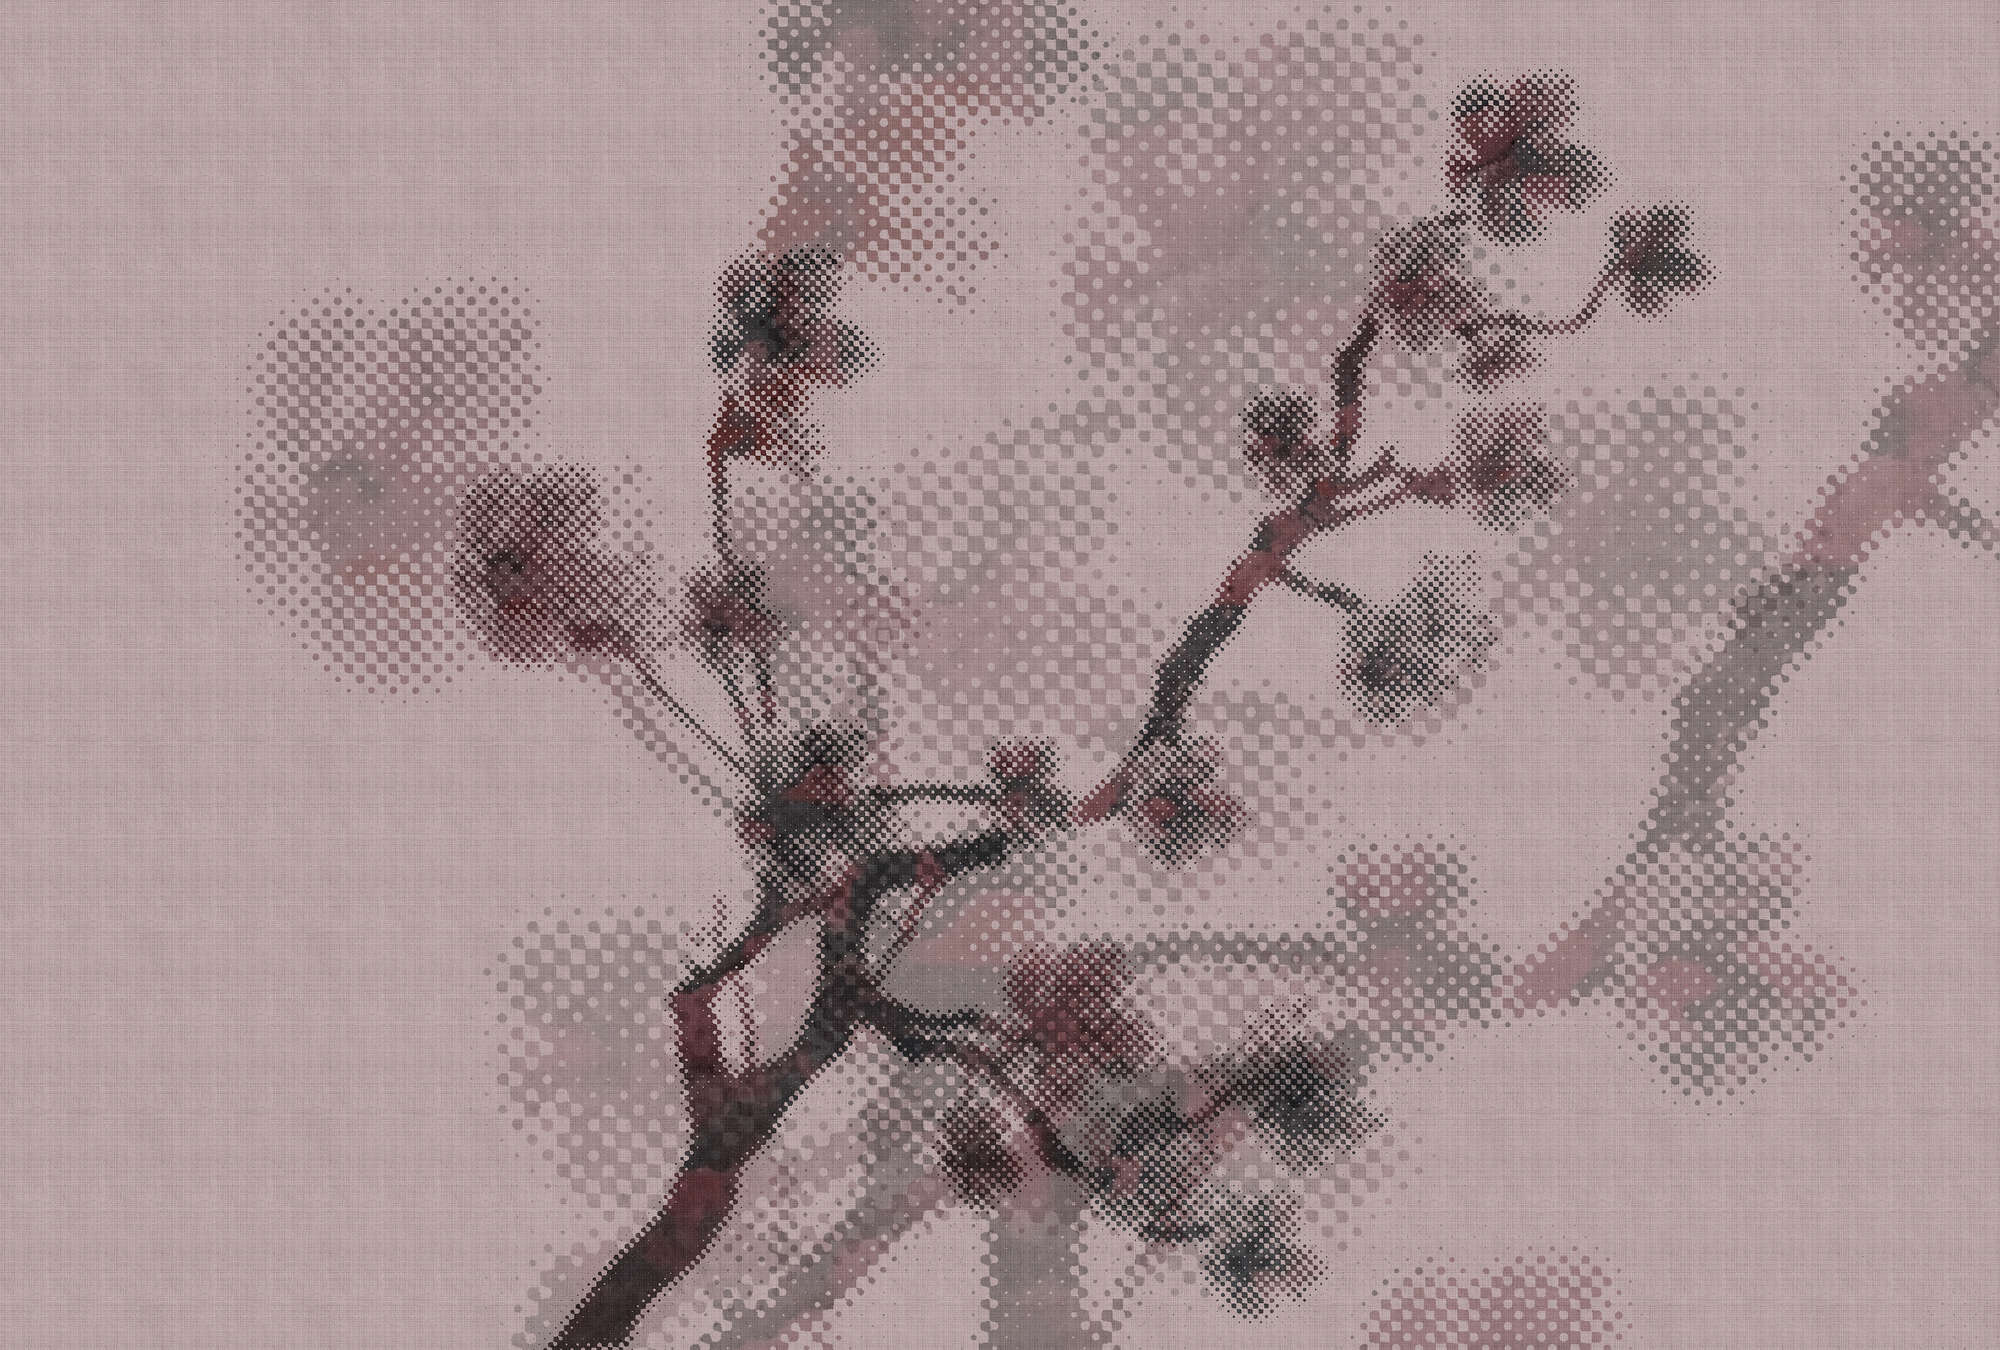             Twigs 3 - Papier peint motif nature & pixel design - texture lin naturel - rose | Intissé lisse mat
        